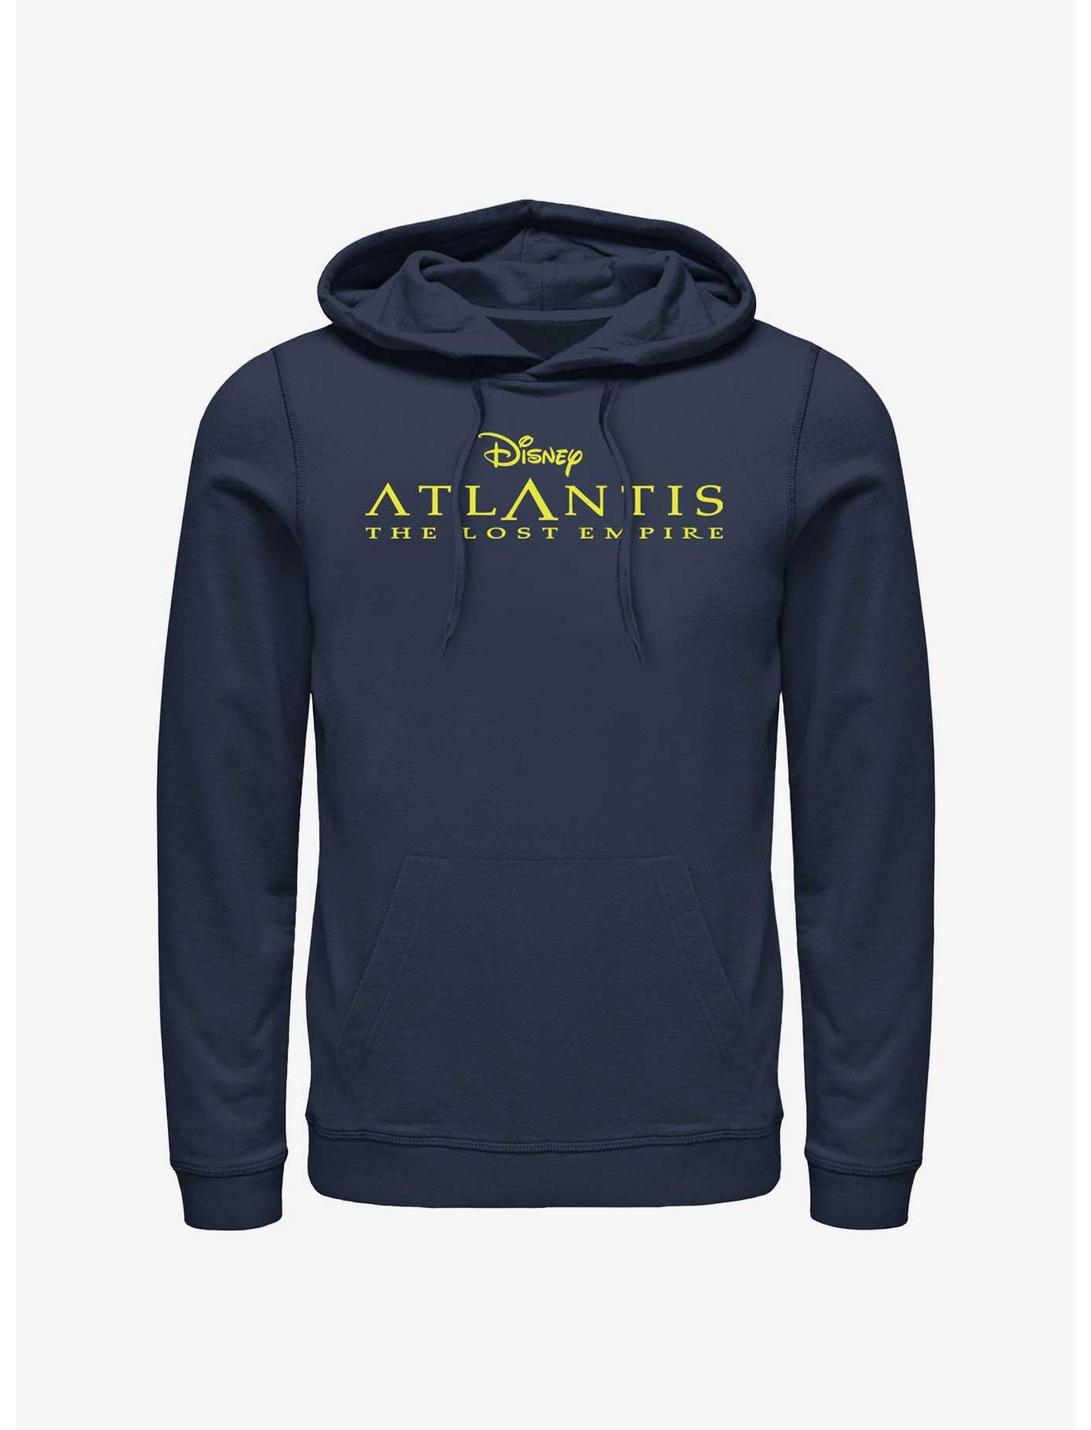 Disney Atlantis: The Lost Empire Logo Hoodie, NAVY, hi-res